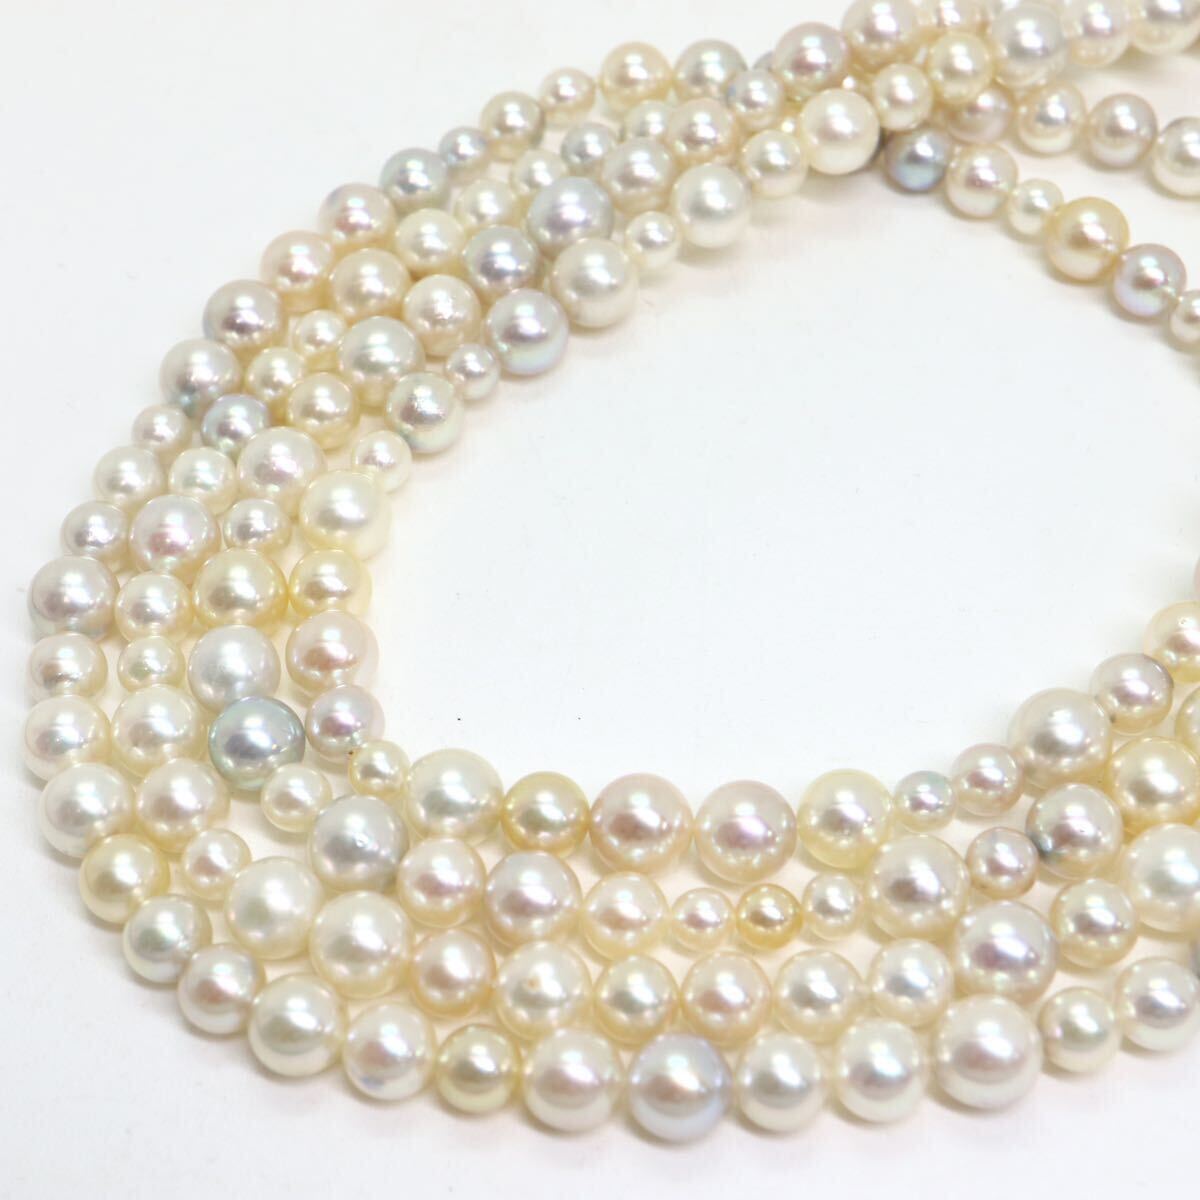 テリ良し!!《K18WG アコヤ本真珠ロングネックレス》A 約4.0-7.0mm珠 63.6g 約120.5cm pearl necklace ジュエリー jewelry CA0/CA0の画像5